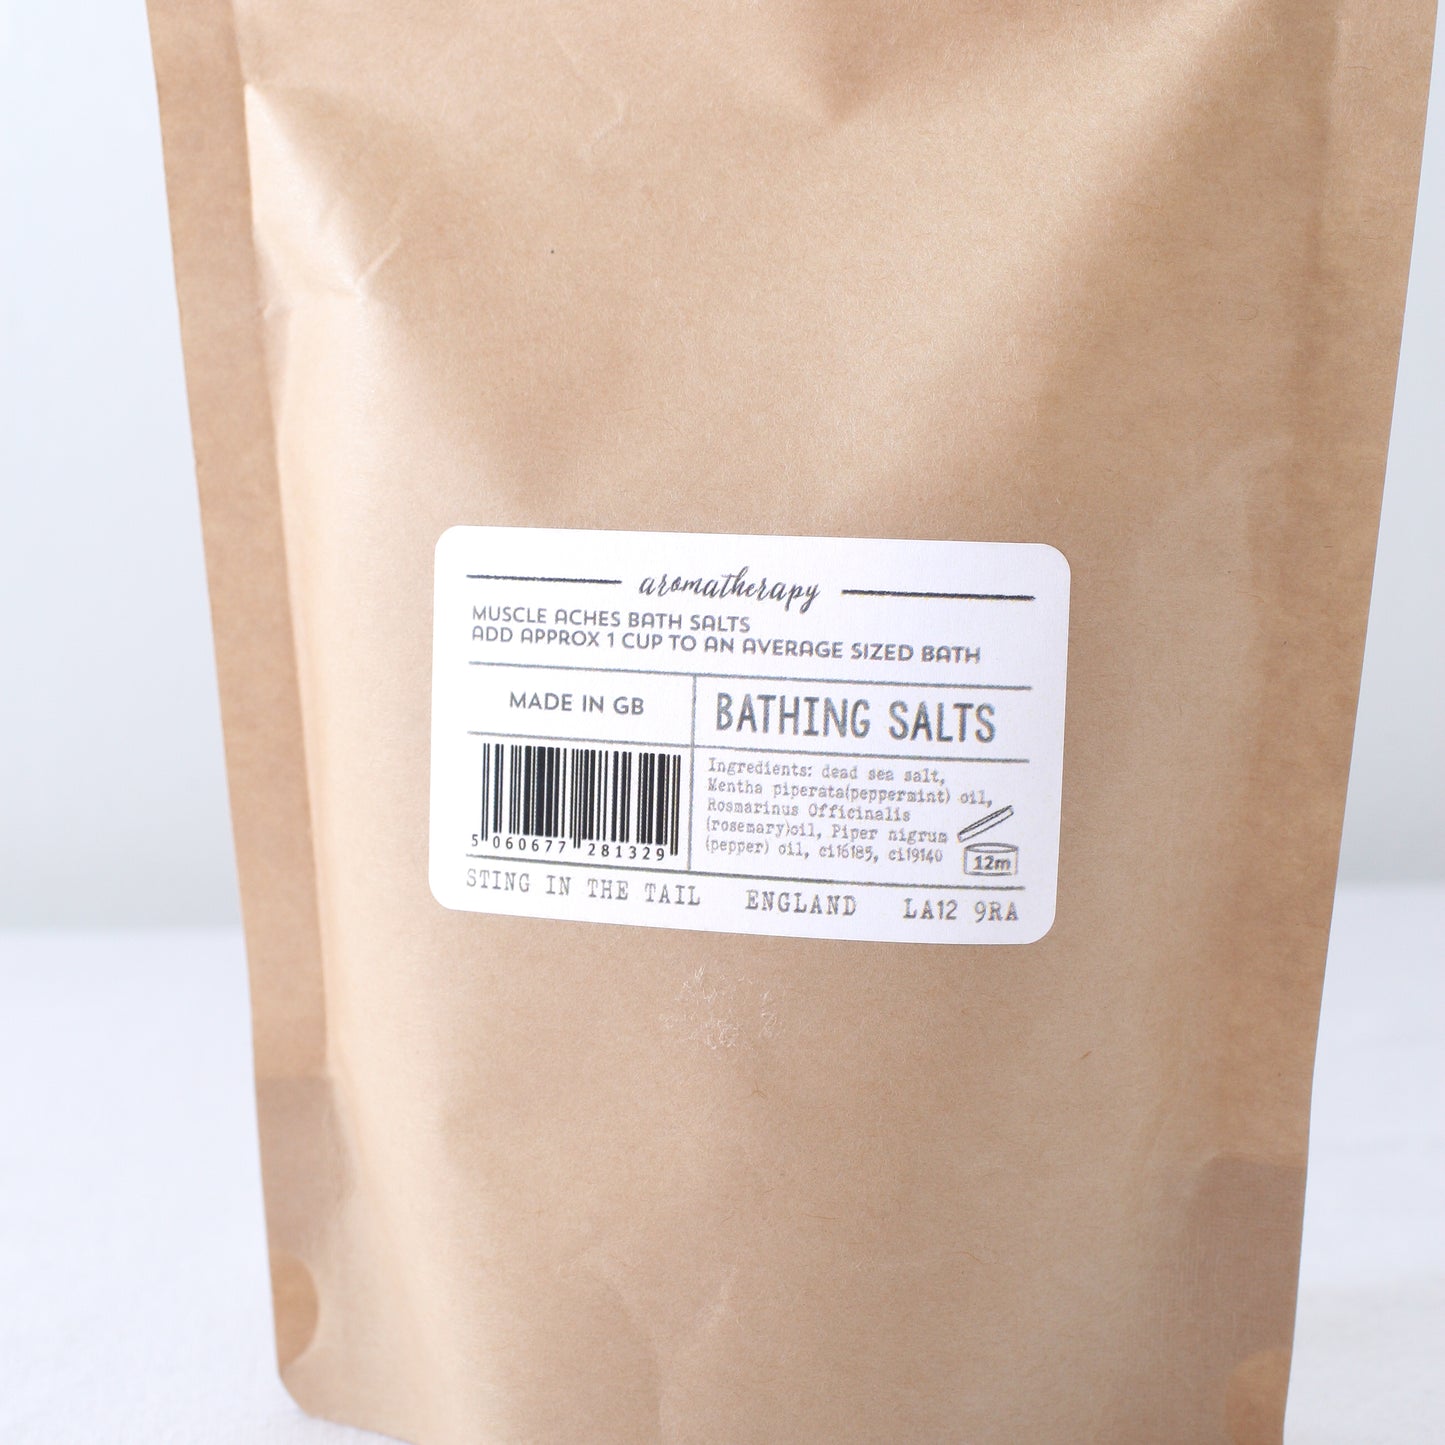 Muscular Aches Bath Salts